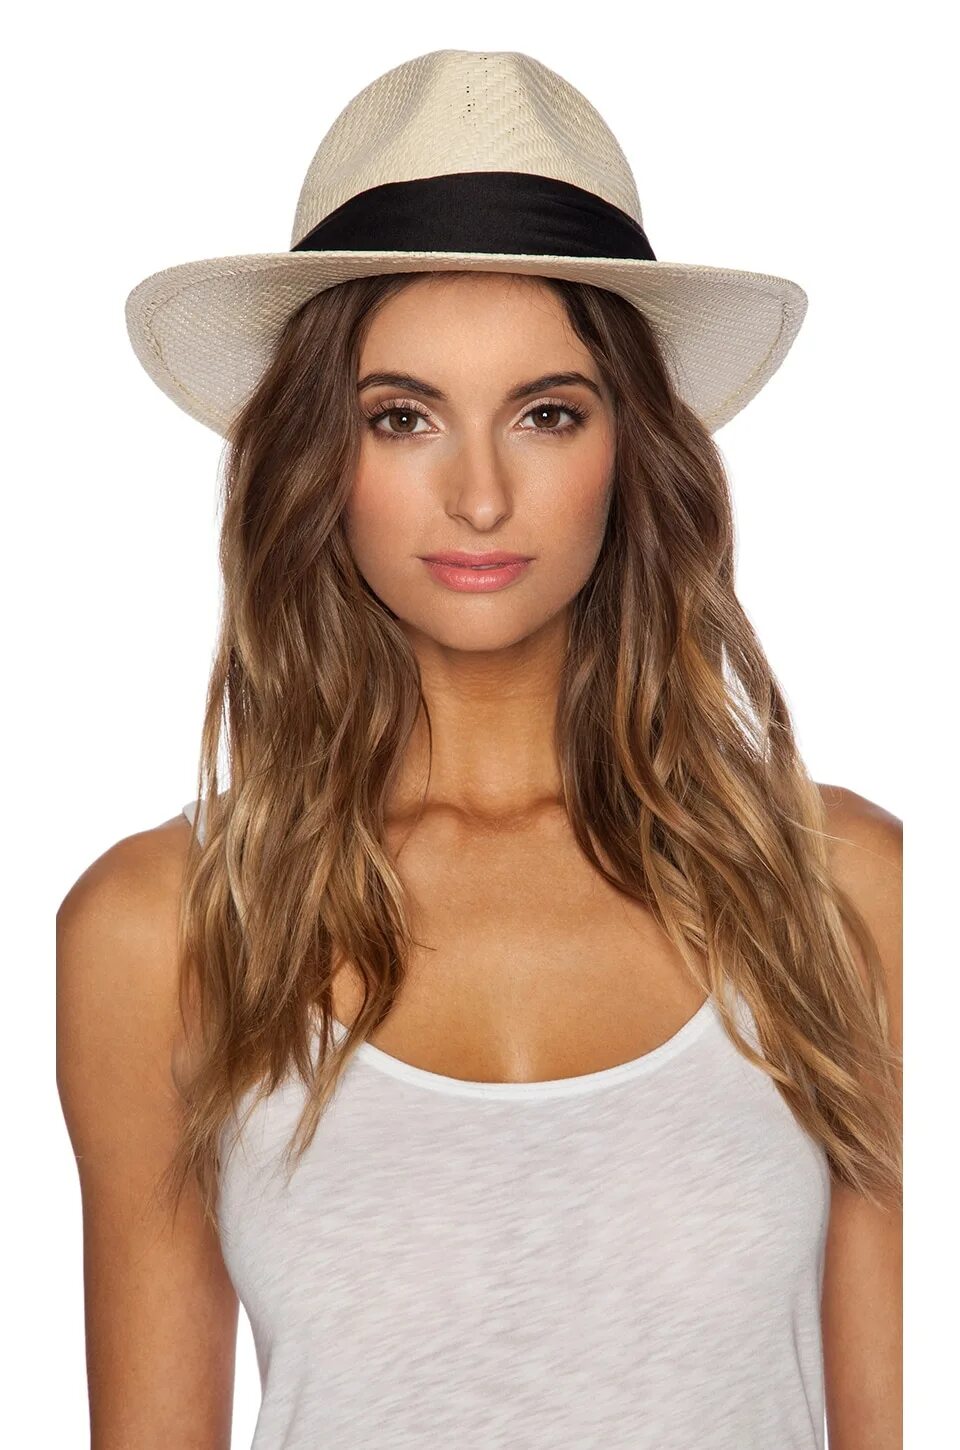 Панама (шляпа). Панамская шляпа. Шляпы женские с открытым верхом. Шляпы звезд